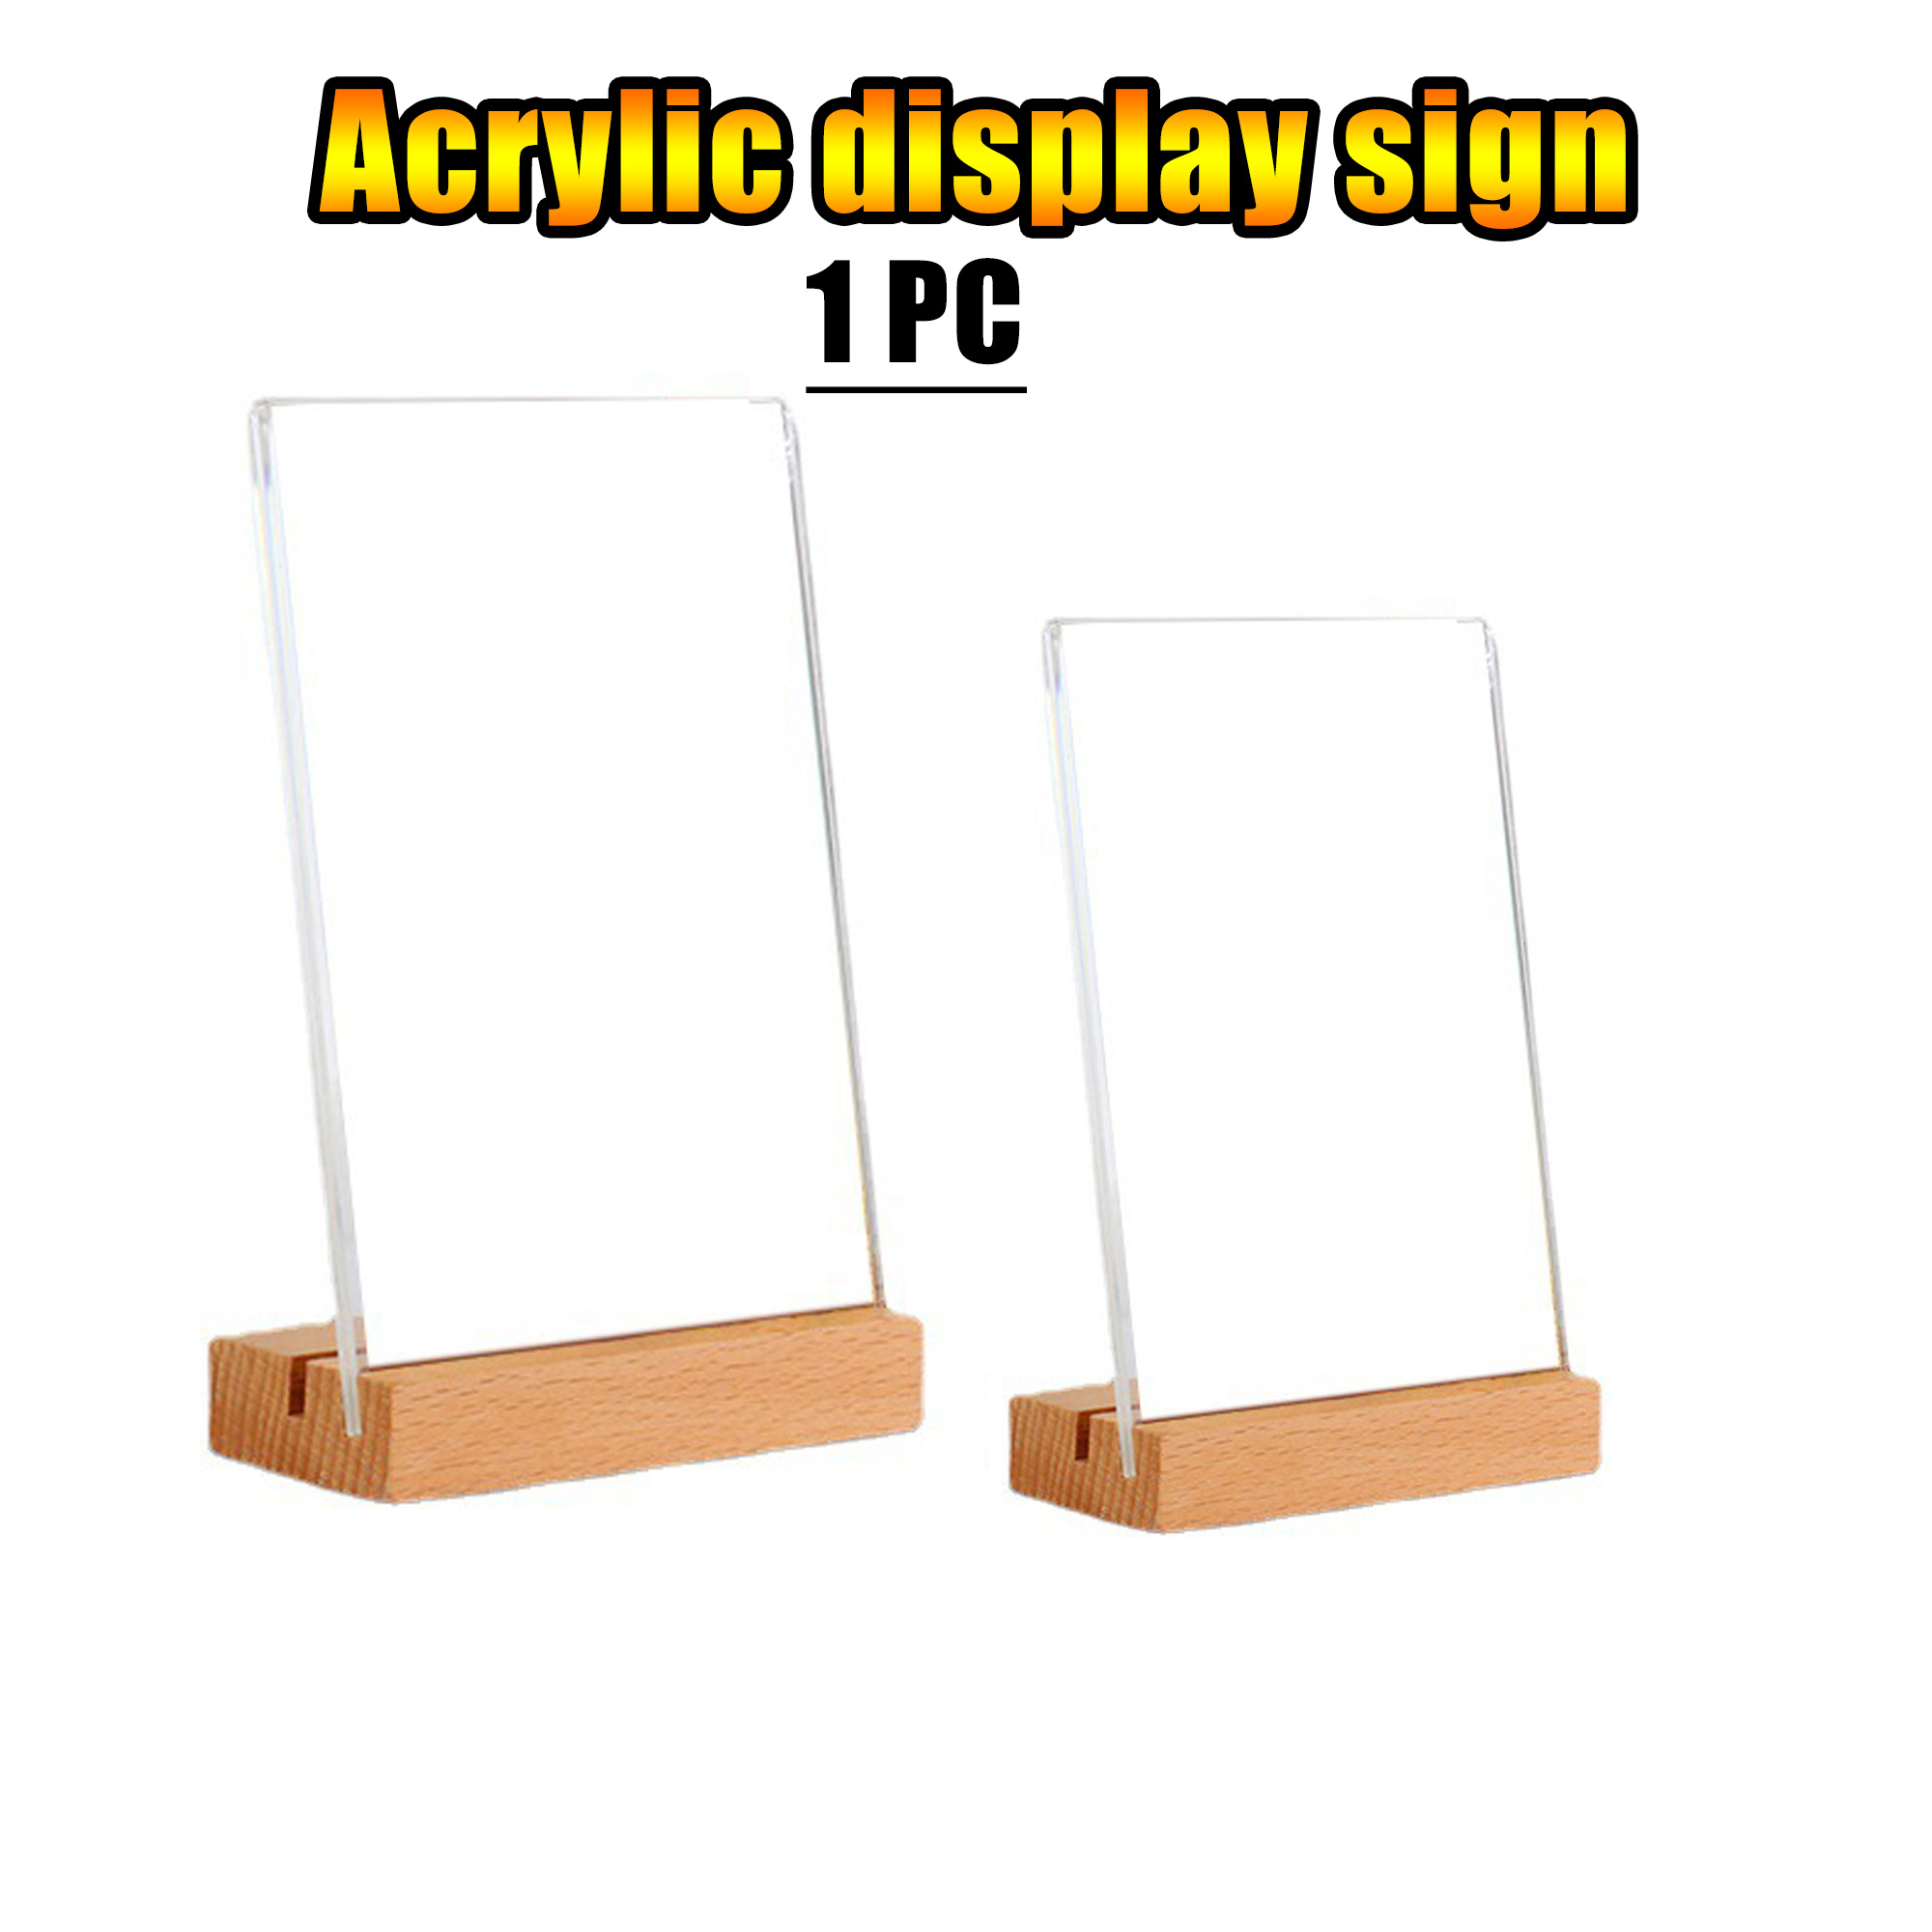 4Pcs Affichage support de chevalet en plaque acrylique Présentoir  Transparent